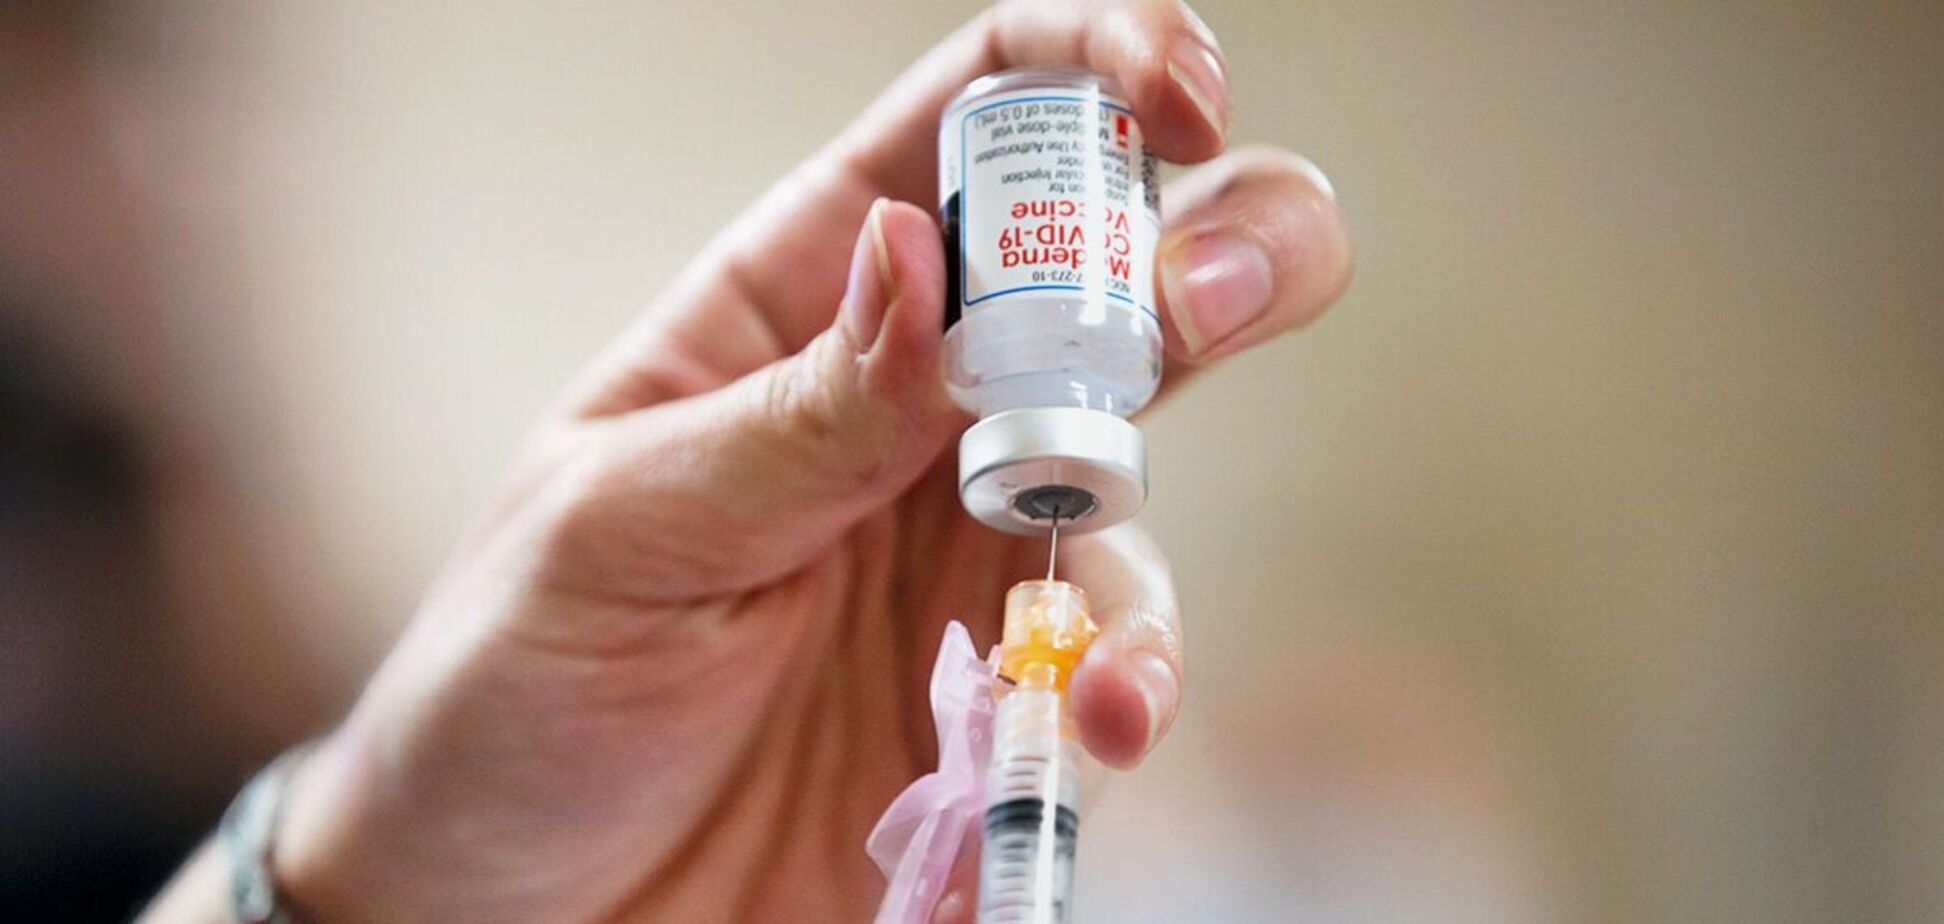 Вакцина від коронавірусу Moderna